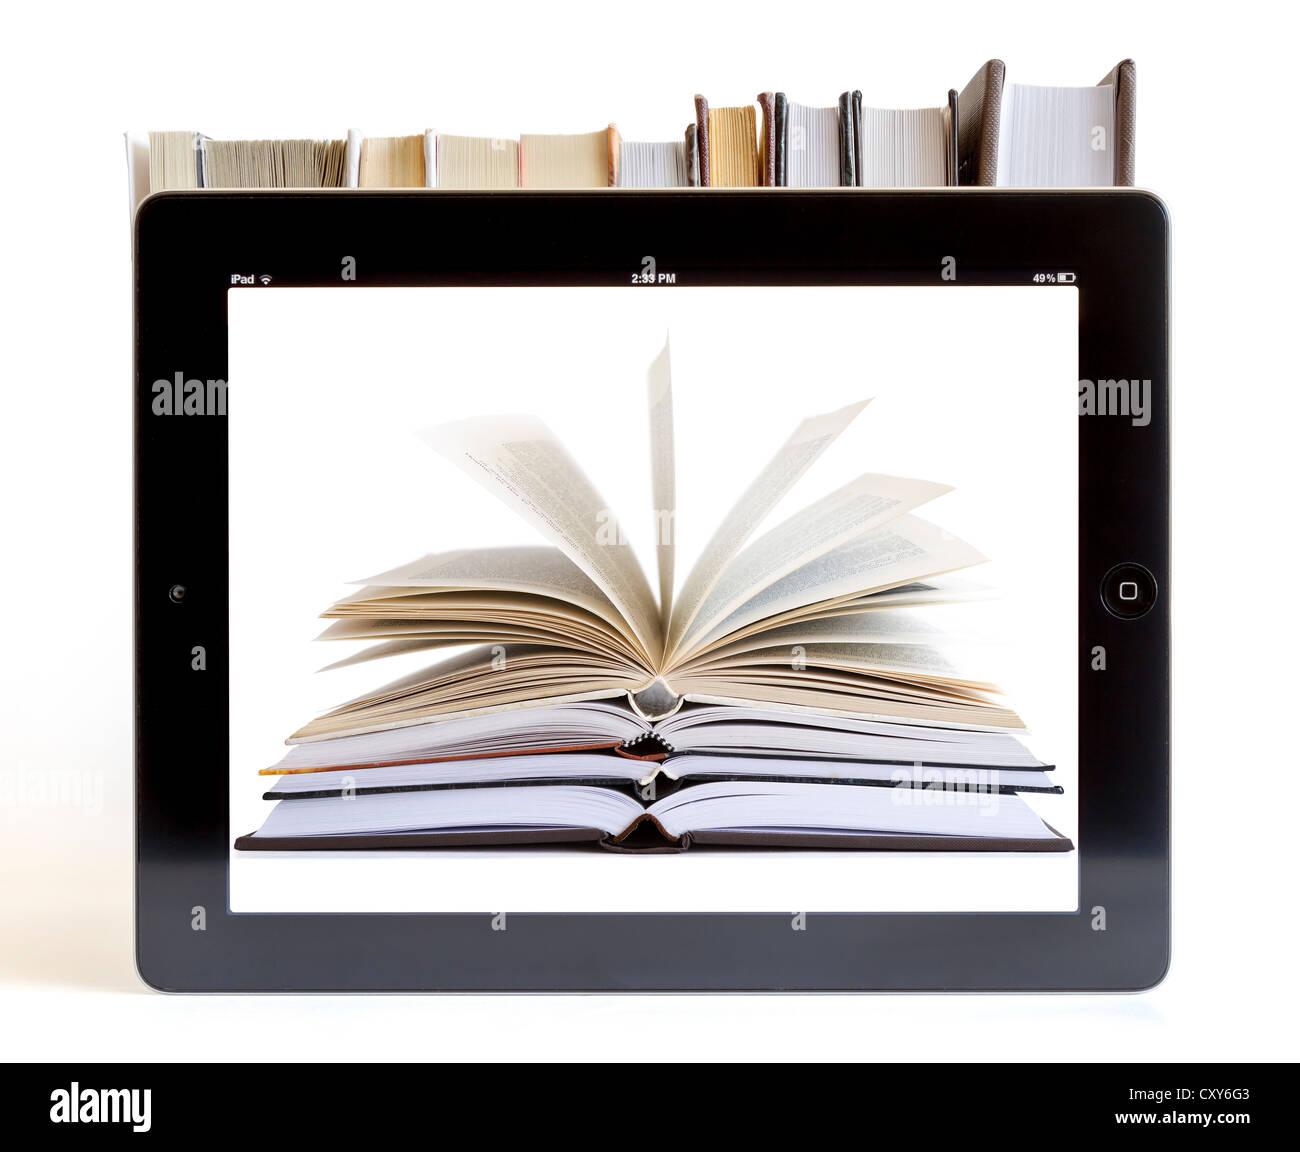 L'Ipad 3 avec des livres sur fond blanc Banque D'Images